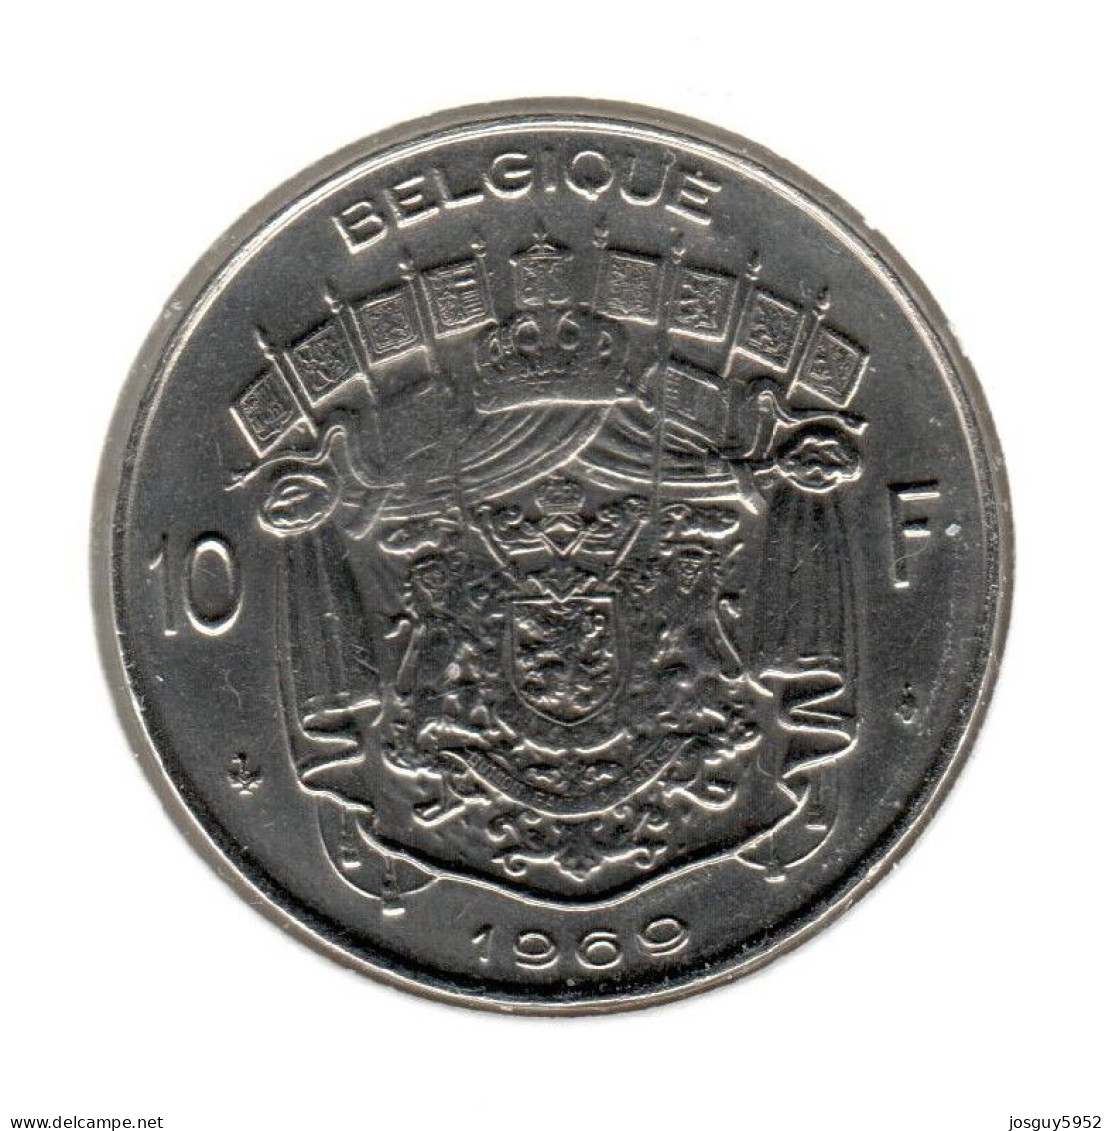 BELGIE - 10 FRANK 1969 - FRANS - PR - 10 Francs